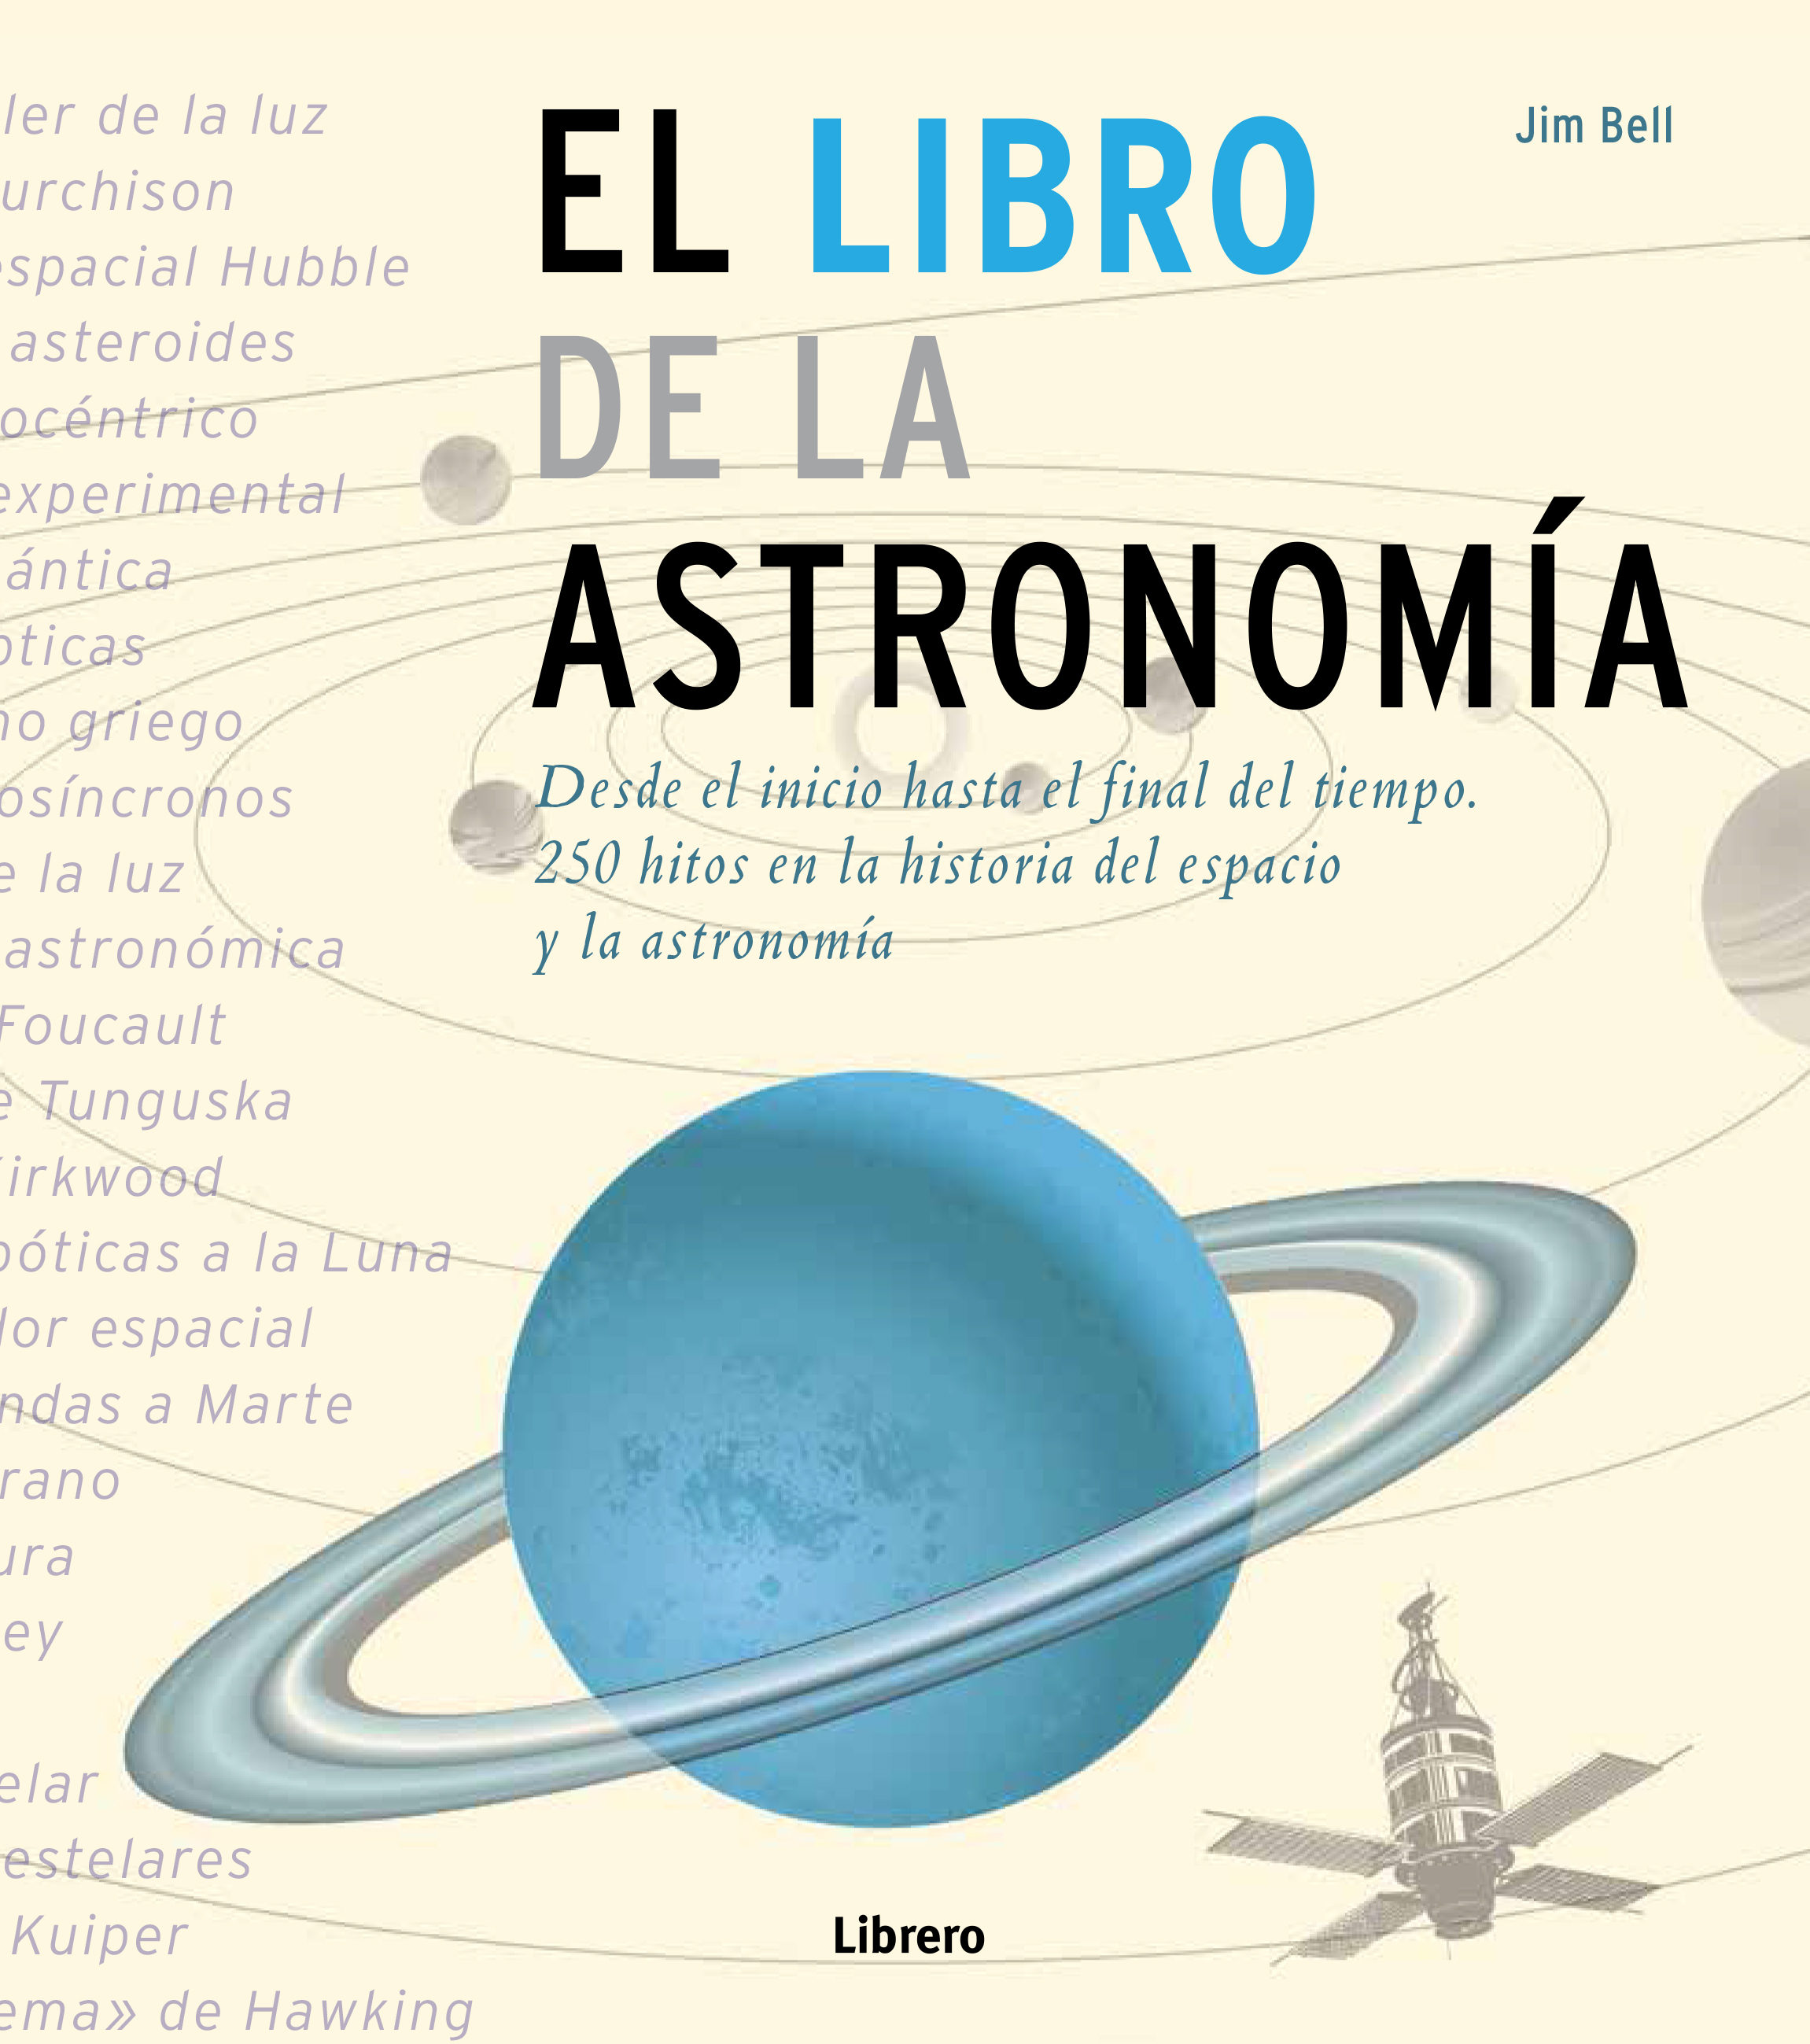 El Libro de las Astronomía